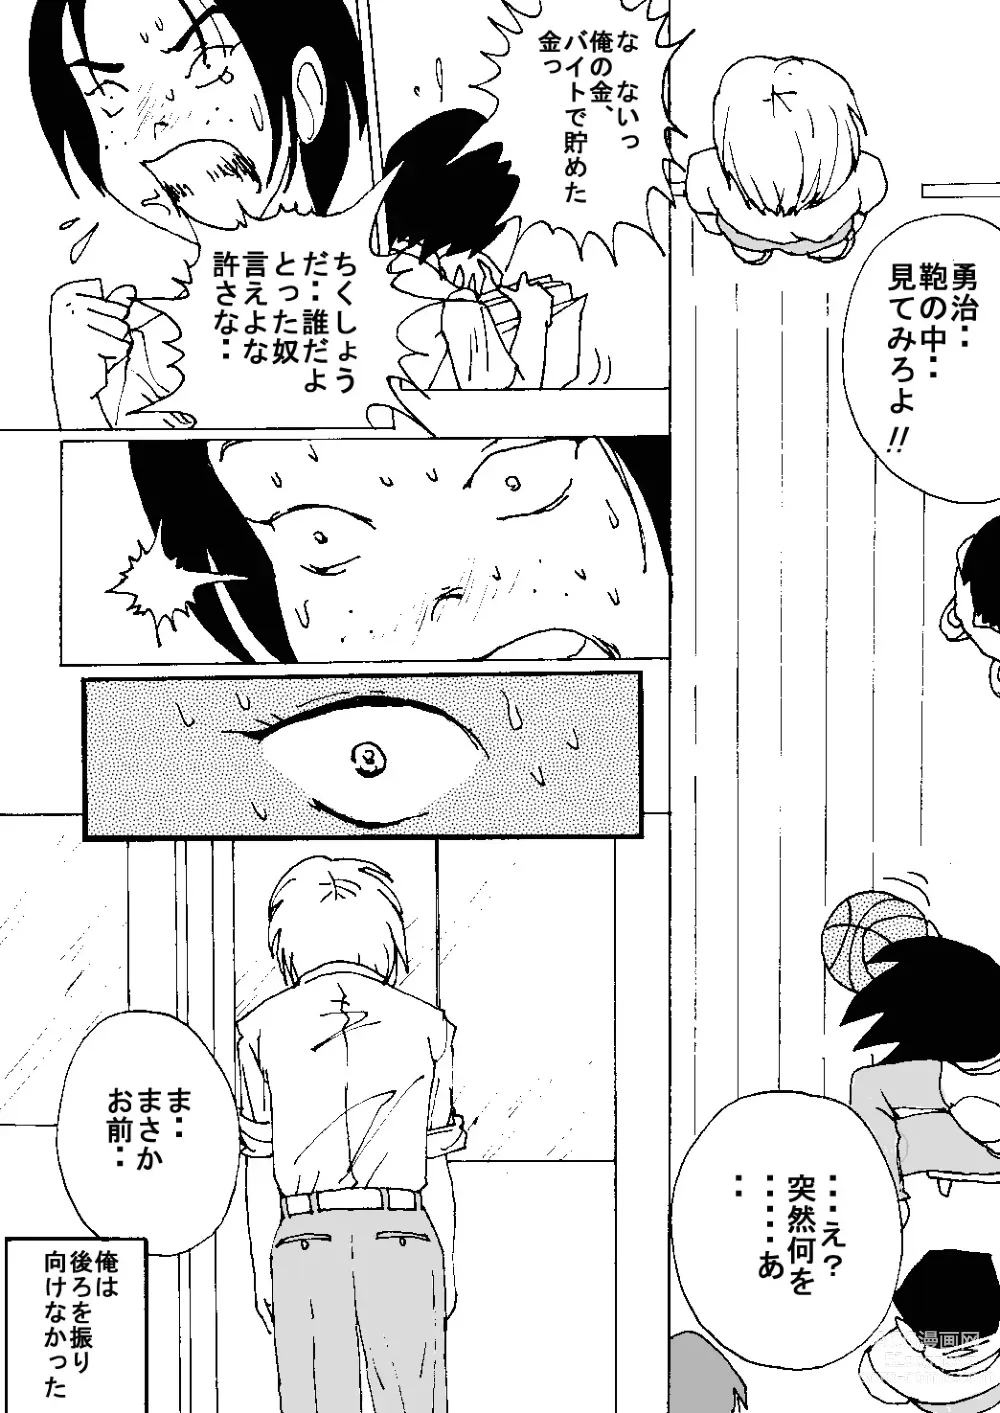 Page 4 of doujinshi Mune Ippai no Dizzy Ch. 8